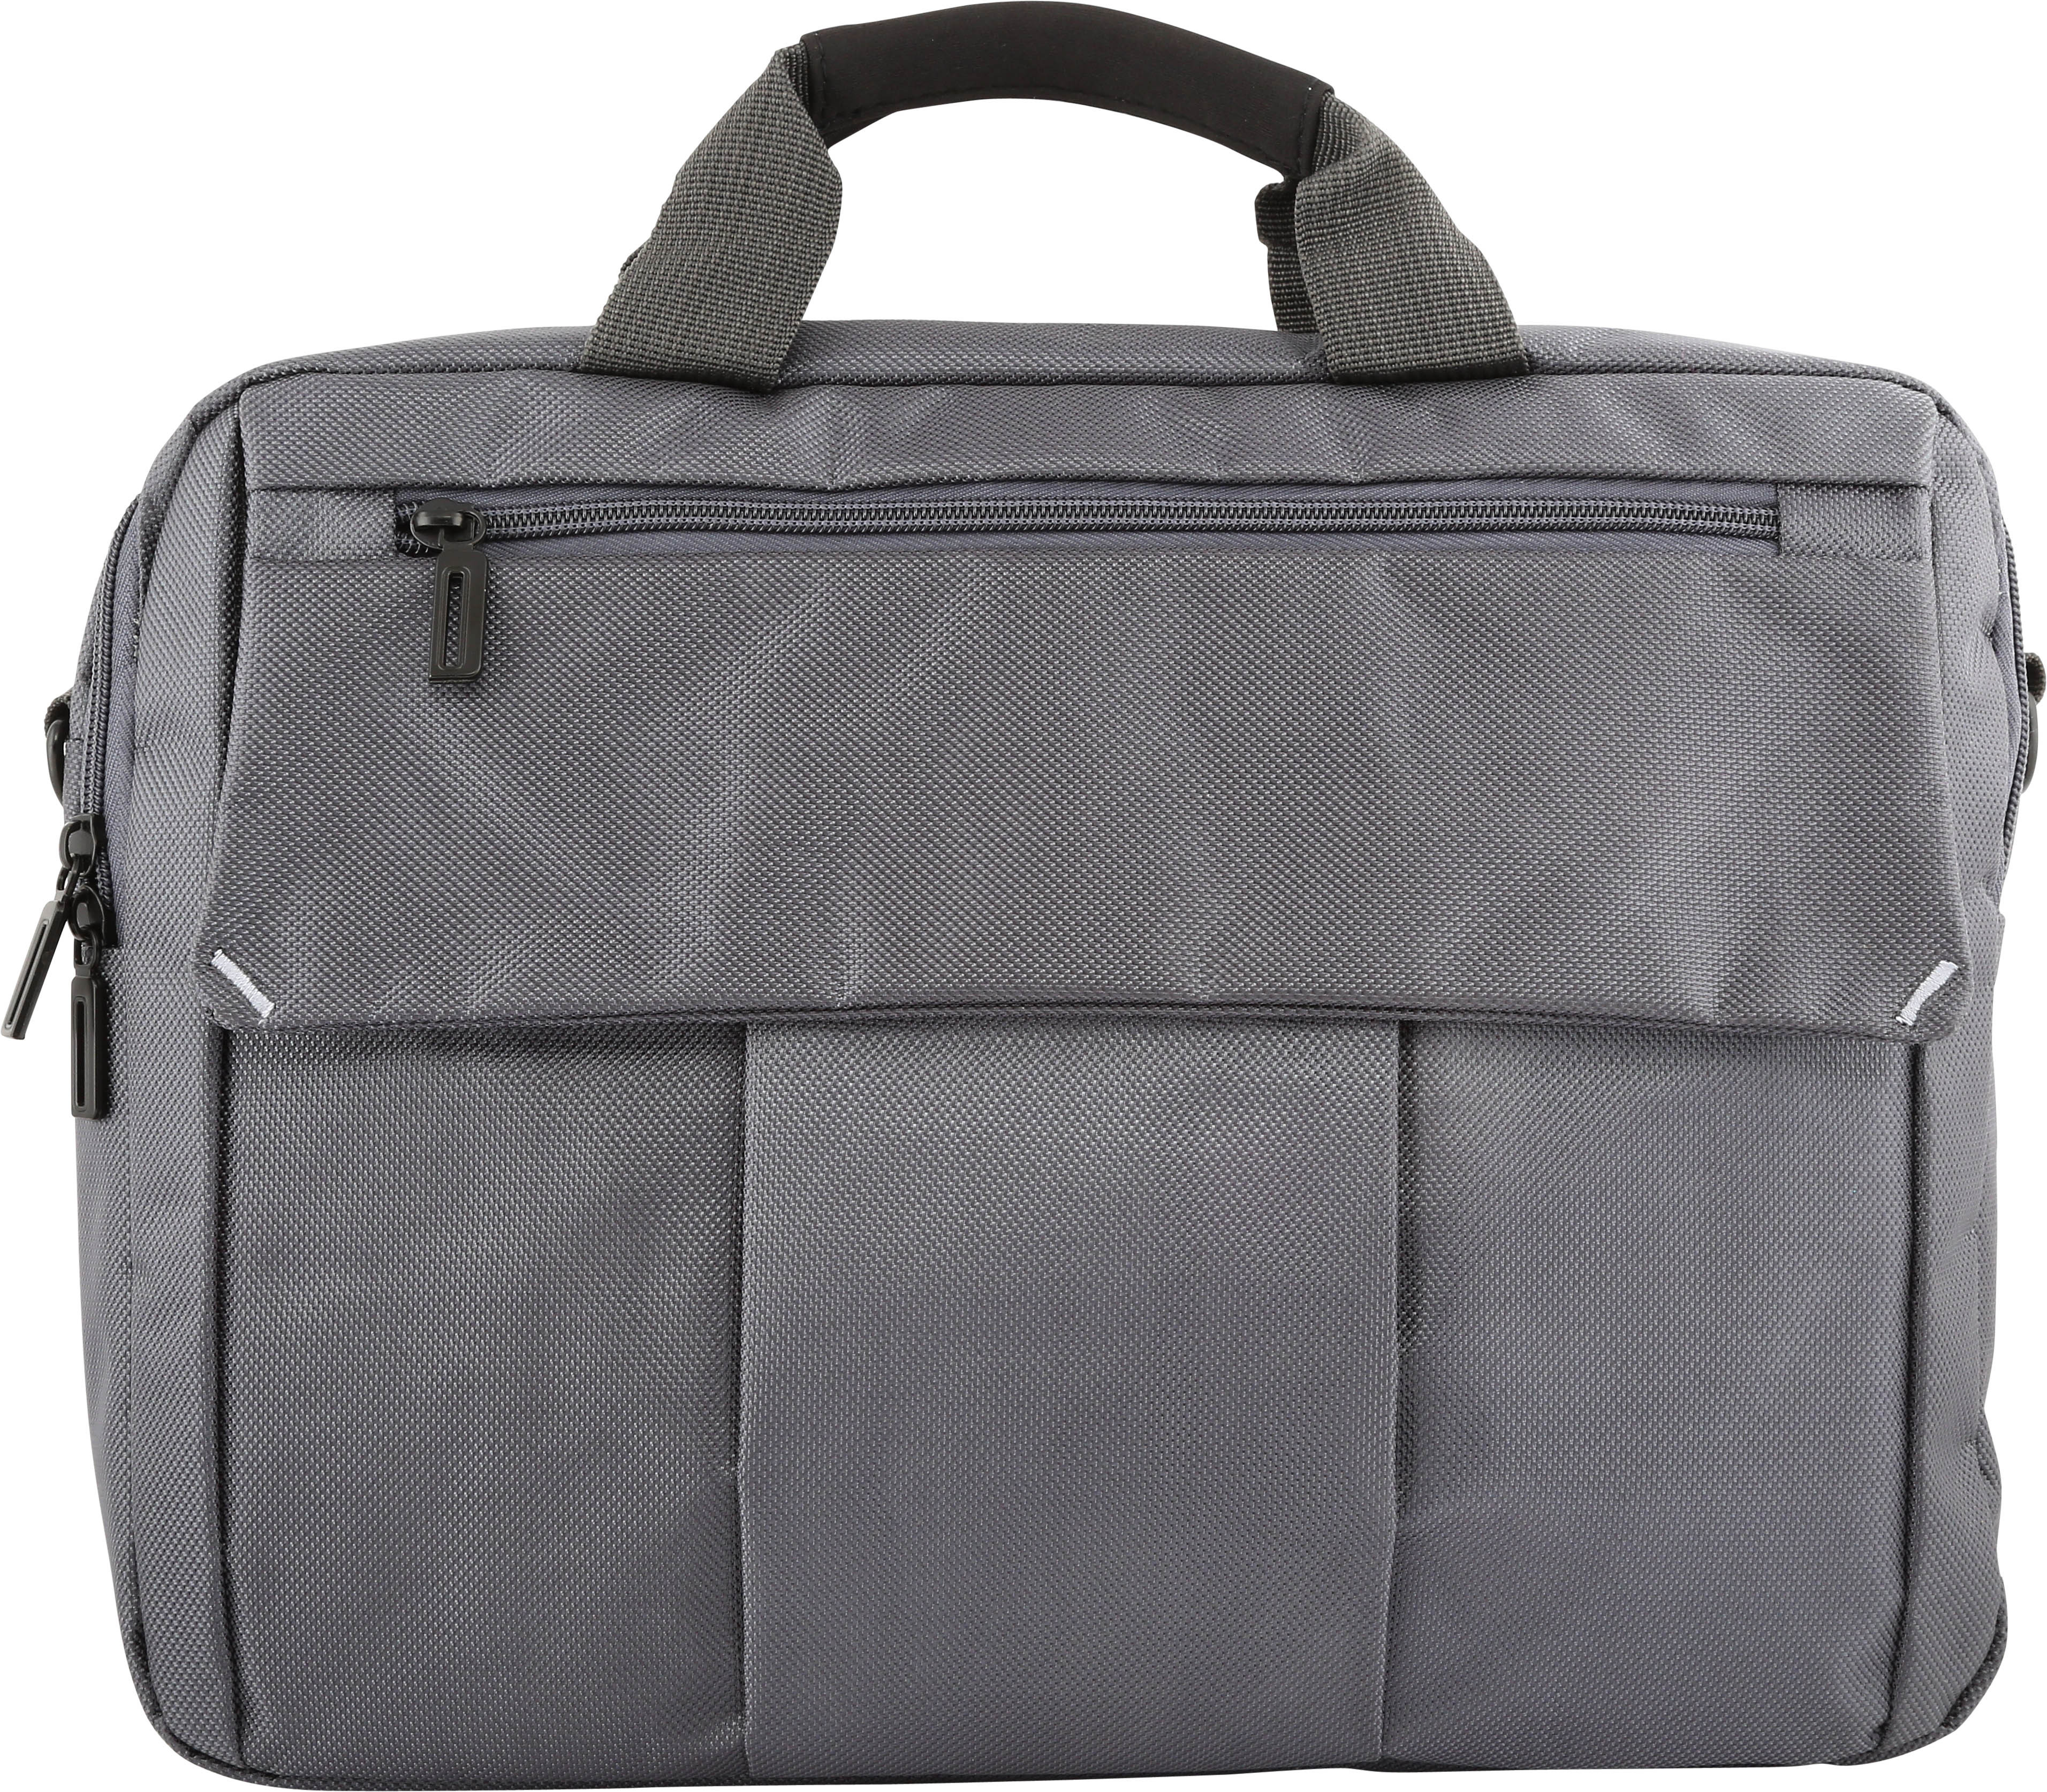 Buy Slim Design Laptop Bag With Shoulder Strap, 14 Inch Grey Online at Low Price, October 2018’s ...